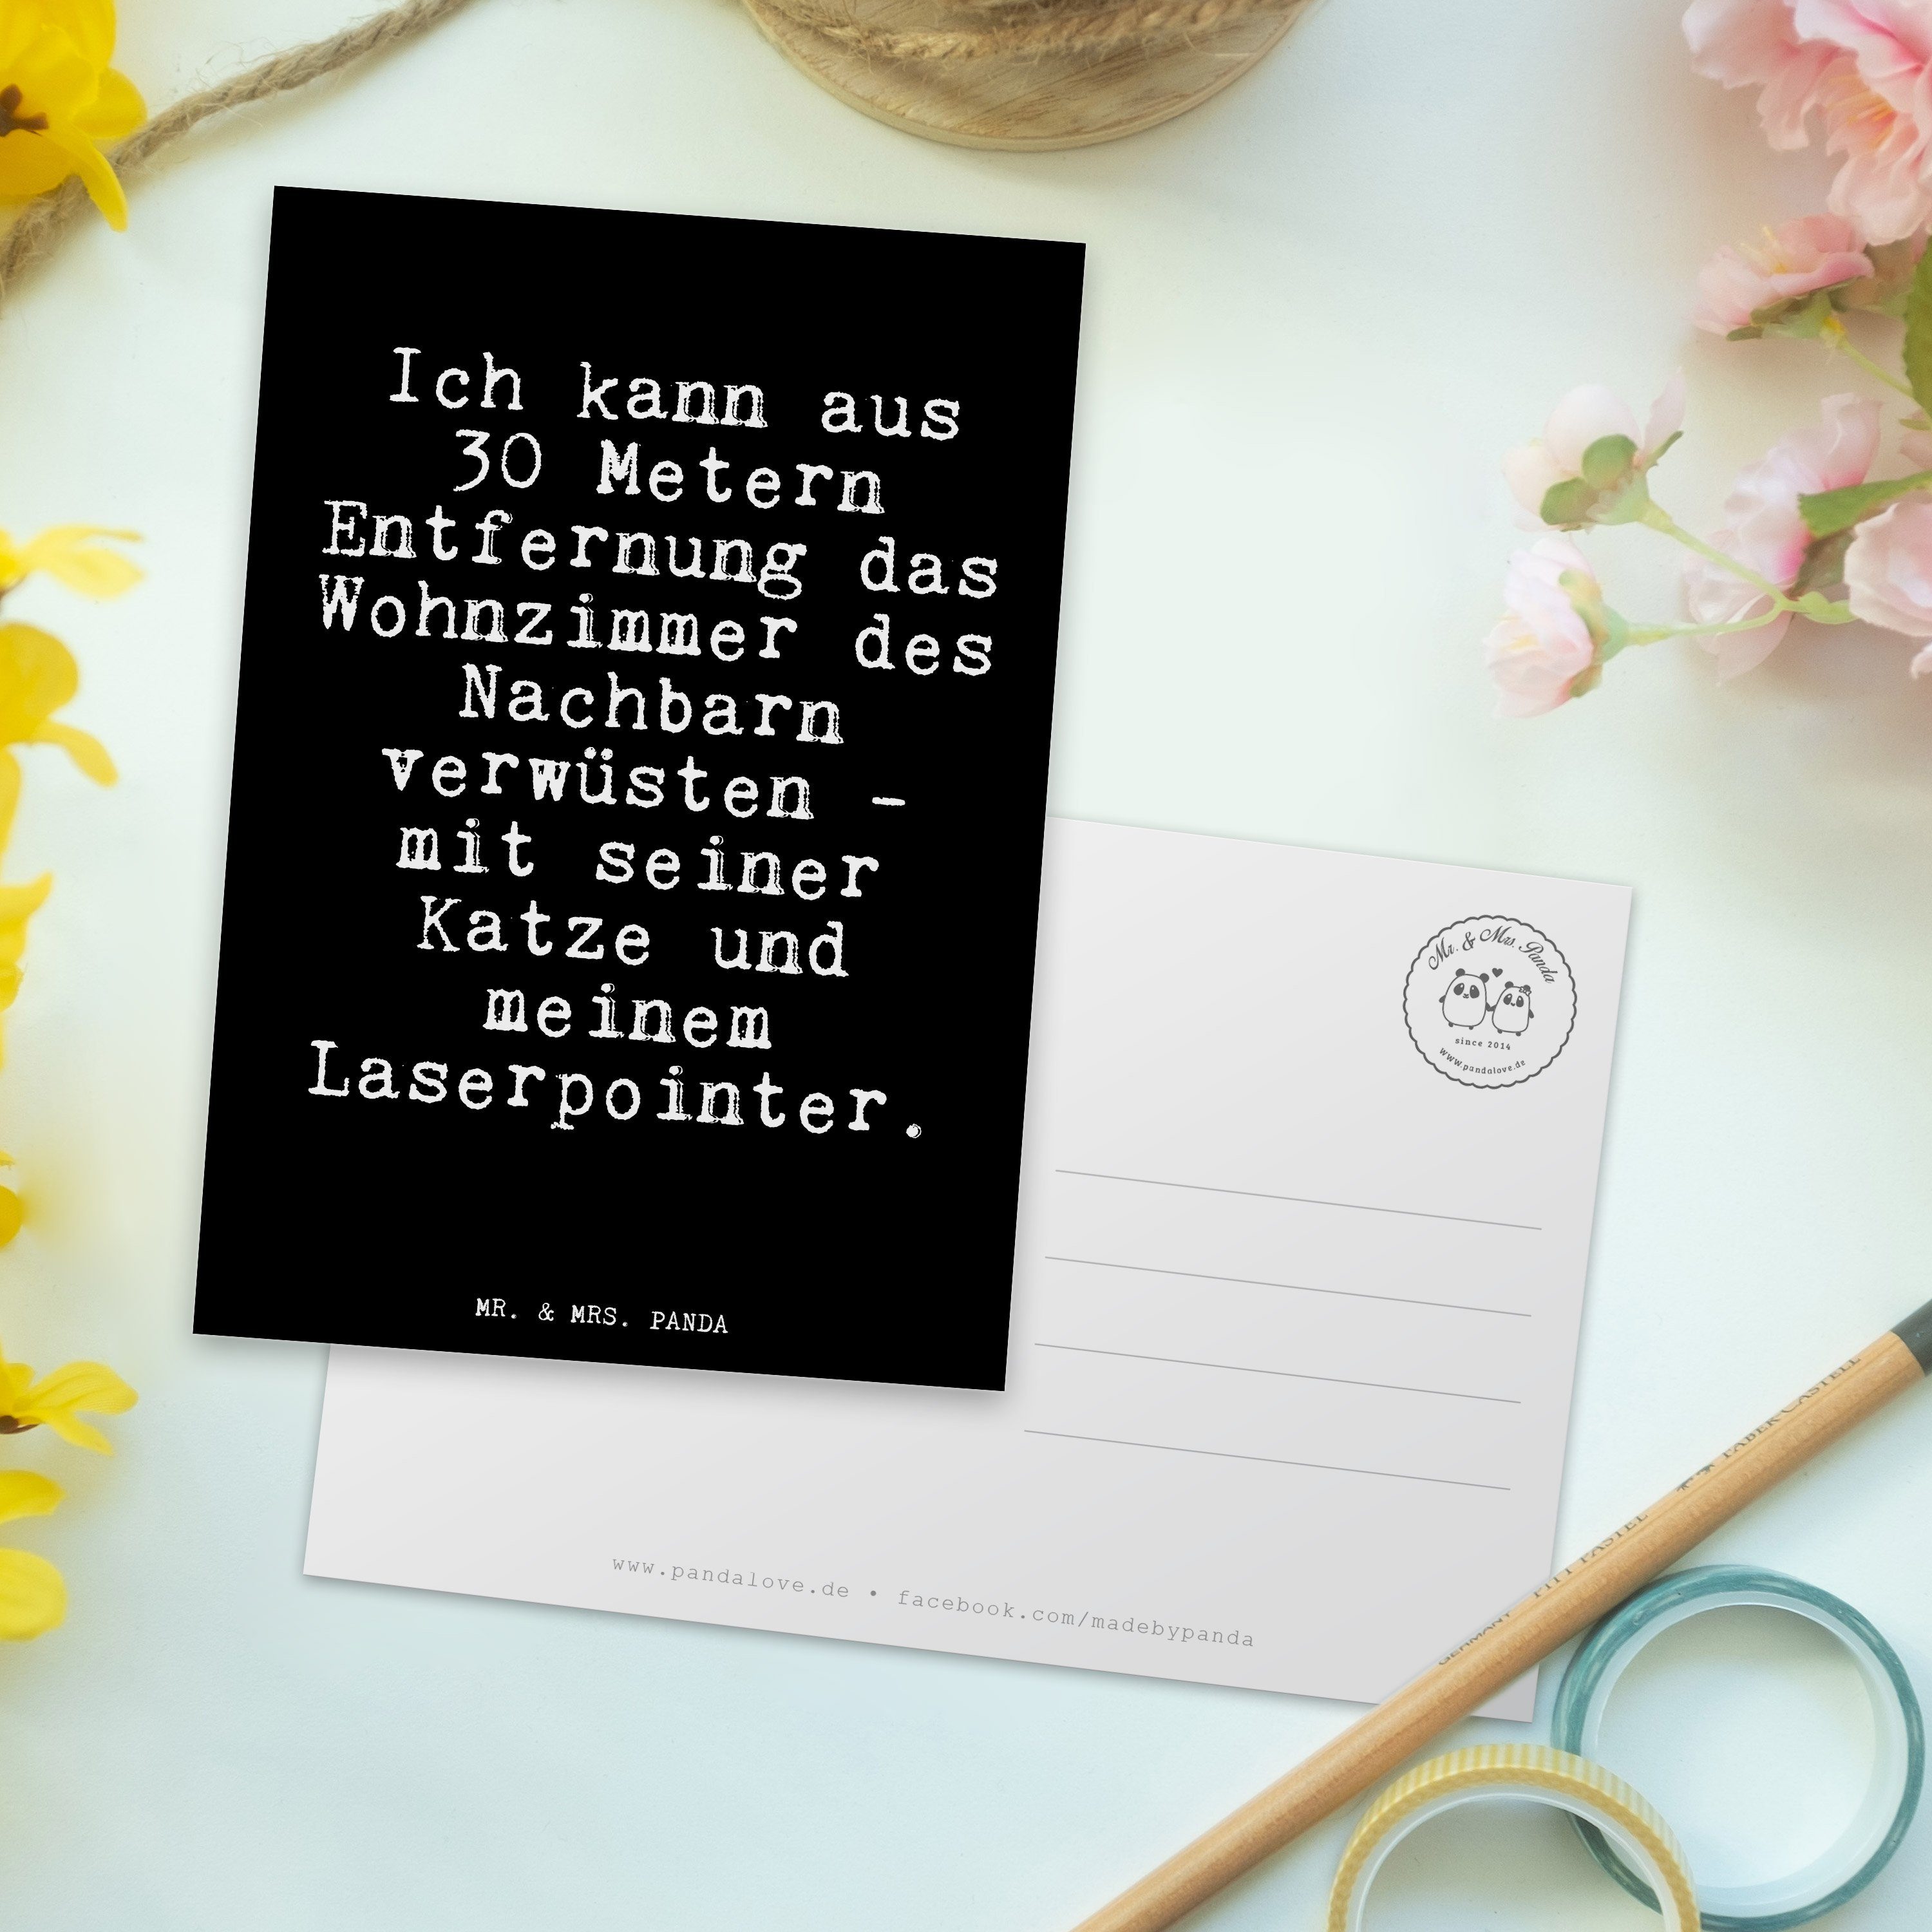 Herrchen, & - Ich Panda aus kann - Schwarz Postkarte Ansichts Mr. Geschenk, Frauchen, Mrs. 30...